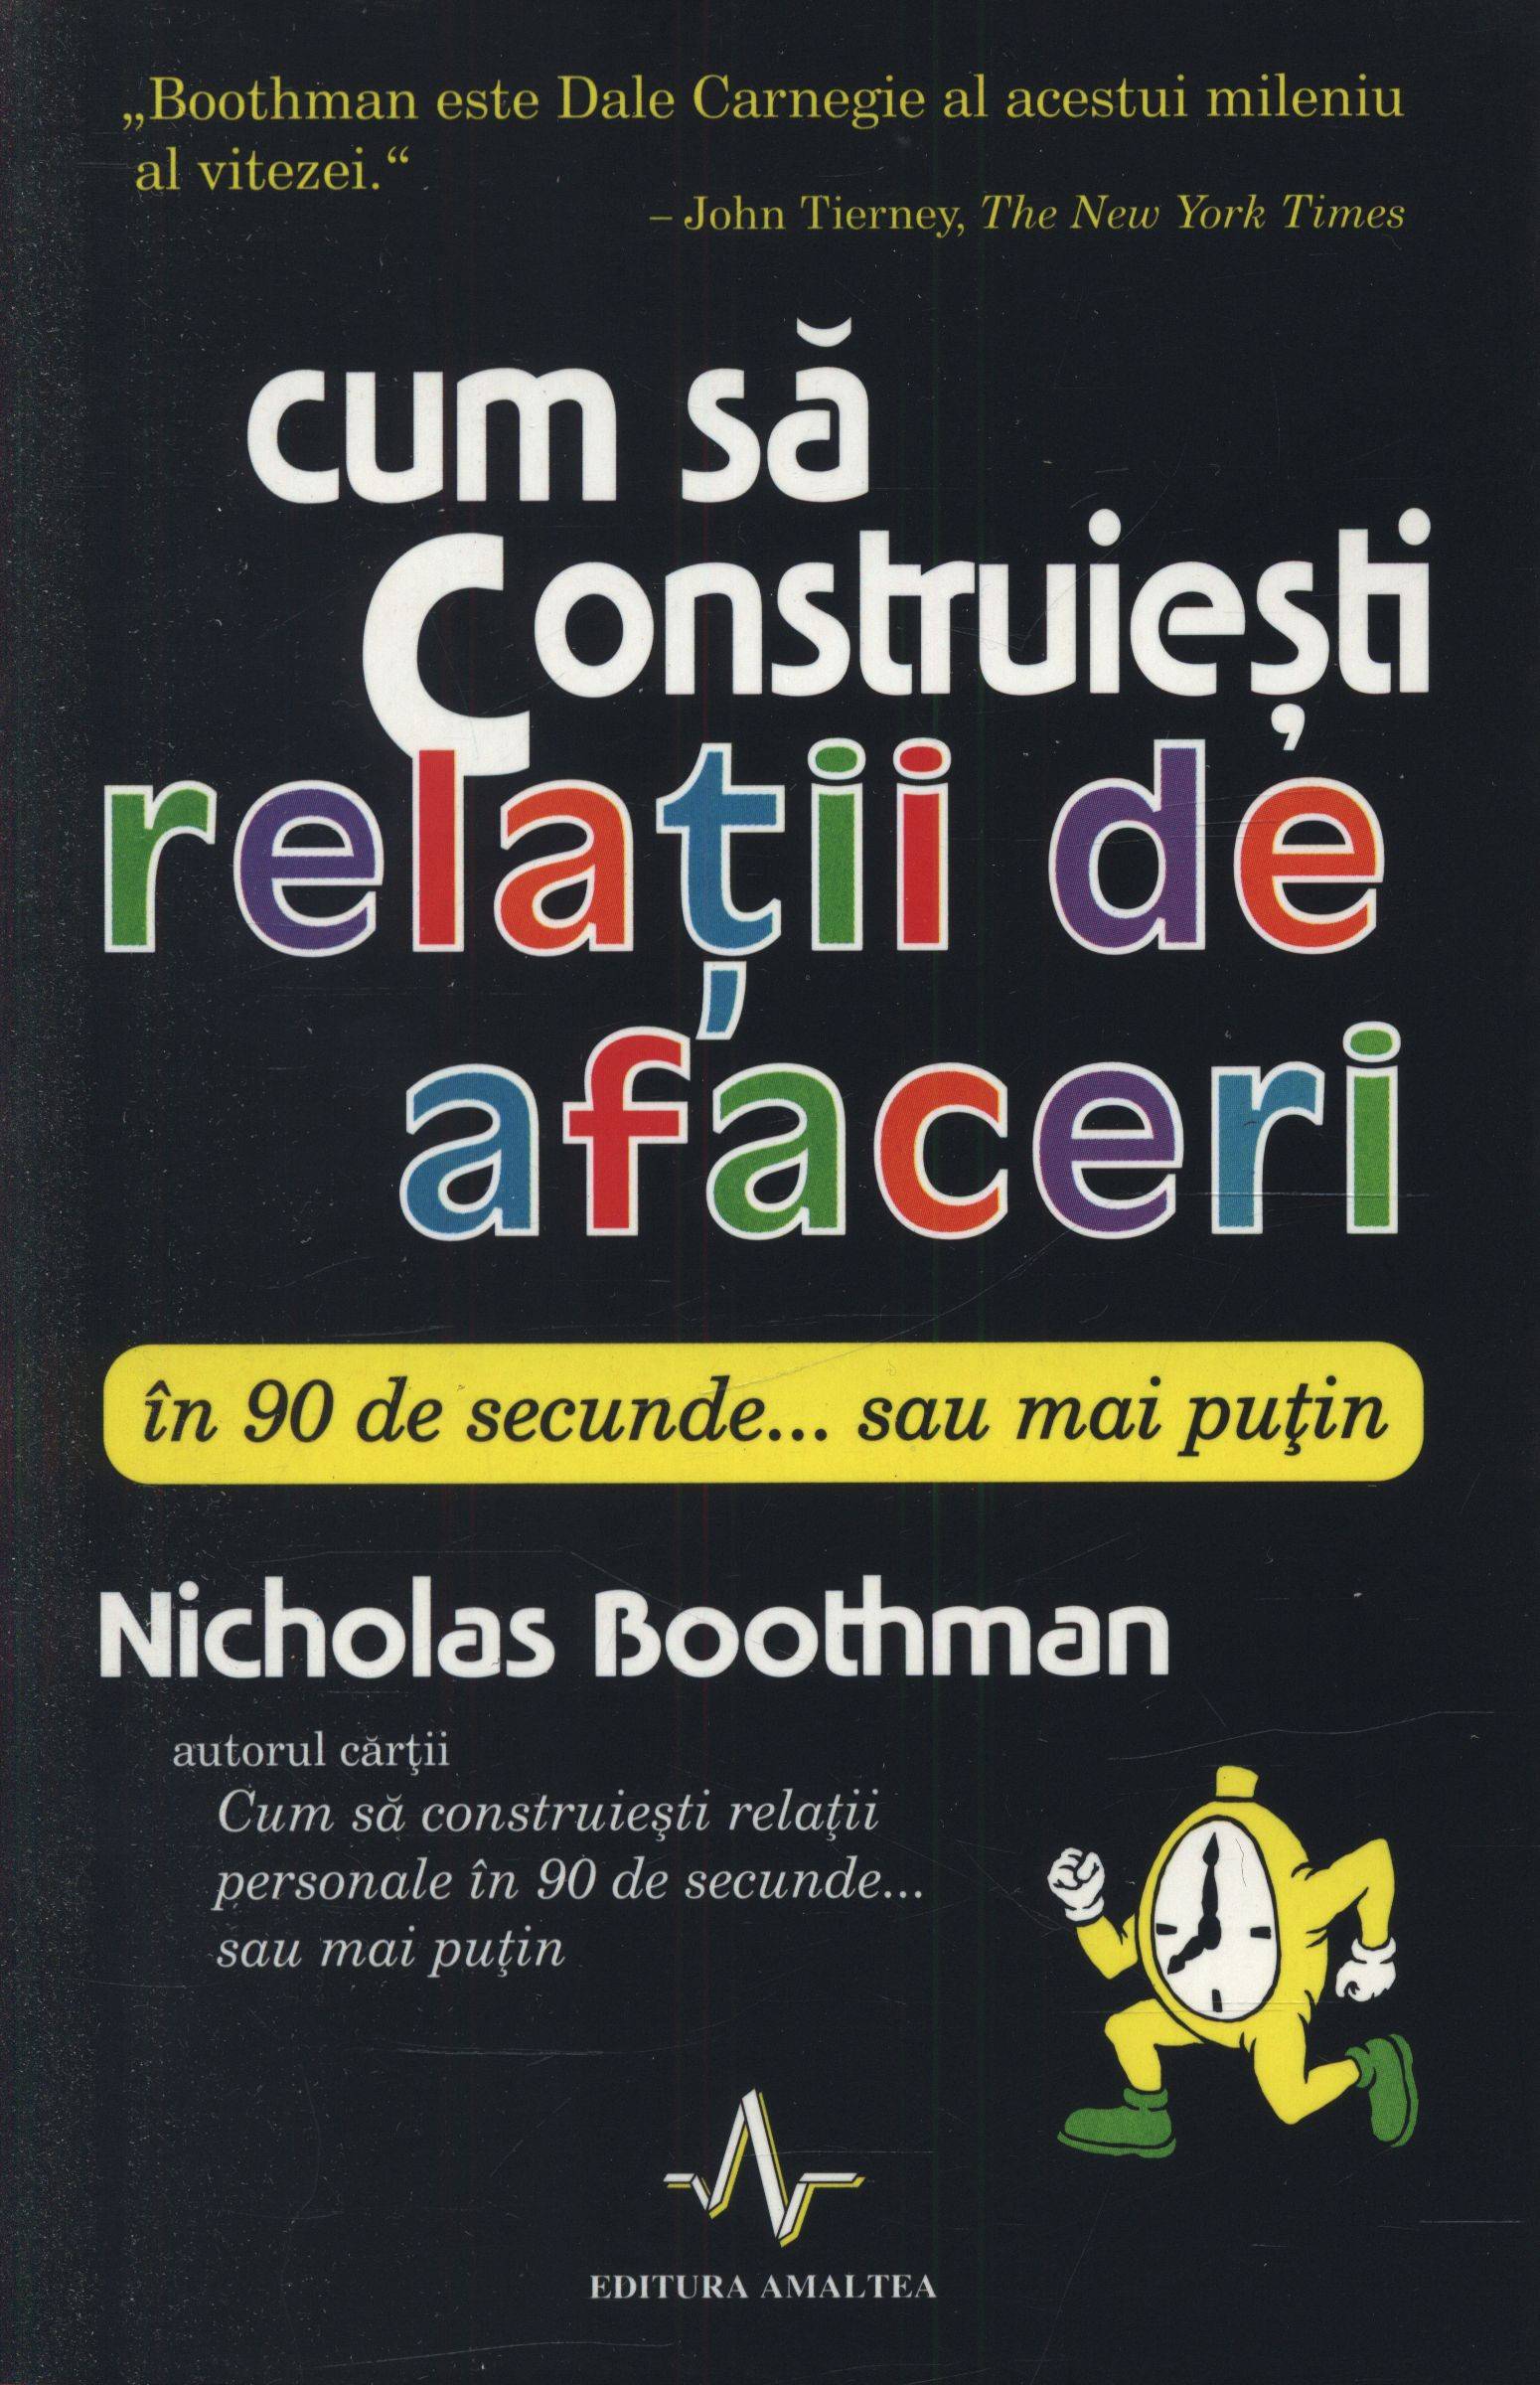 Cum sa construiesti relatii de afaceri in 90 de secunde... sau mai putin - Nicholas Boothman